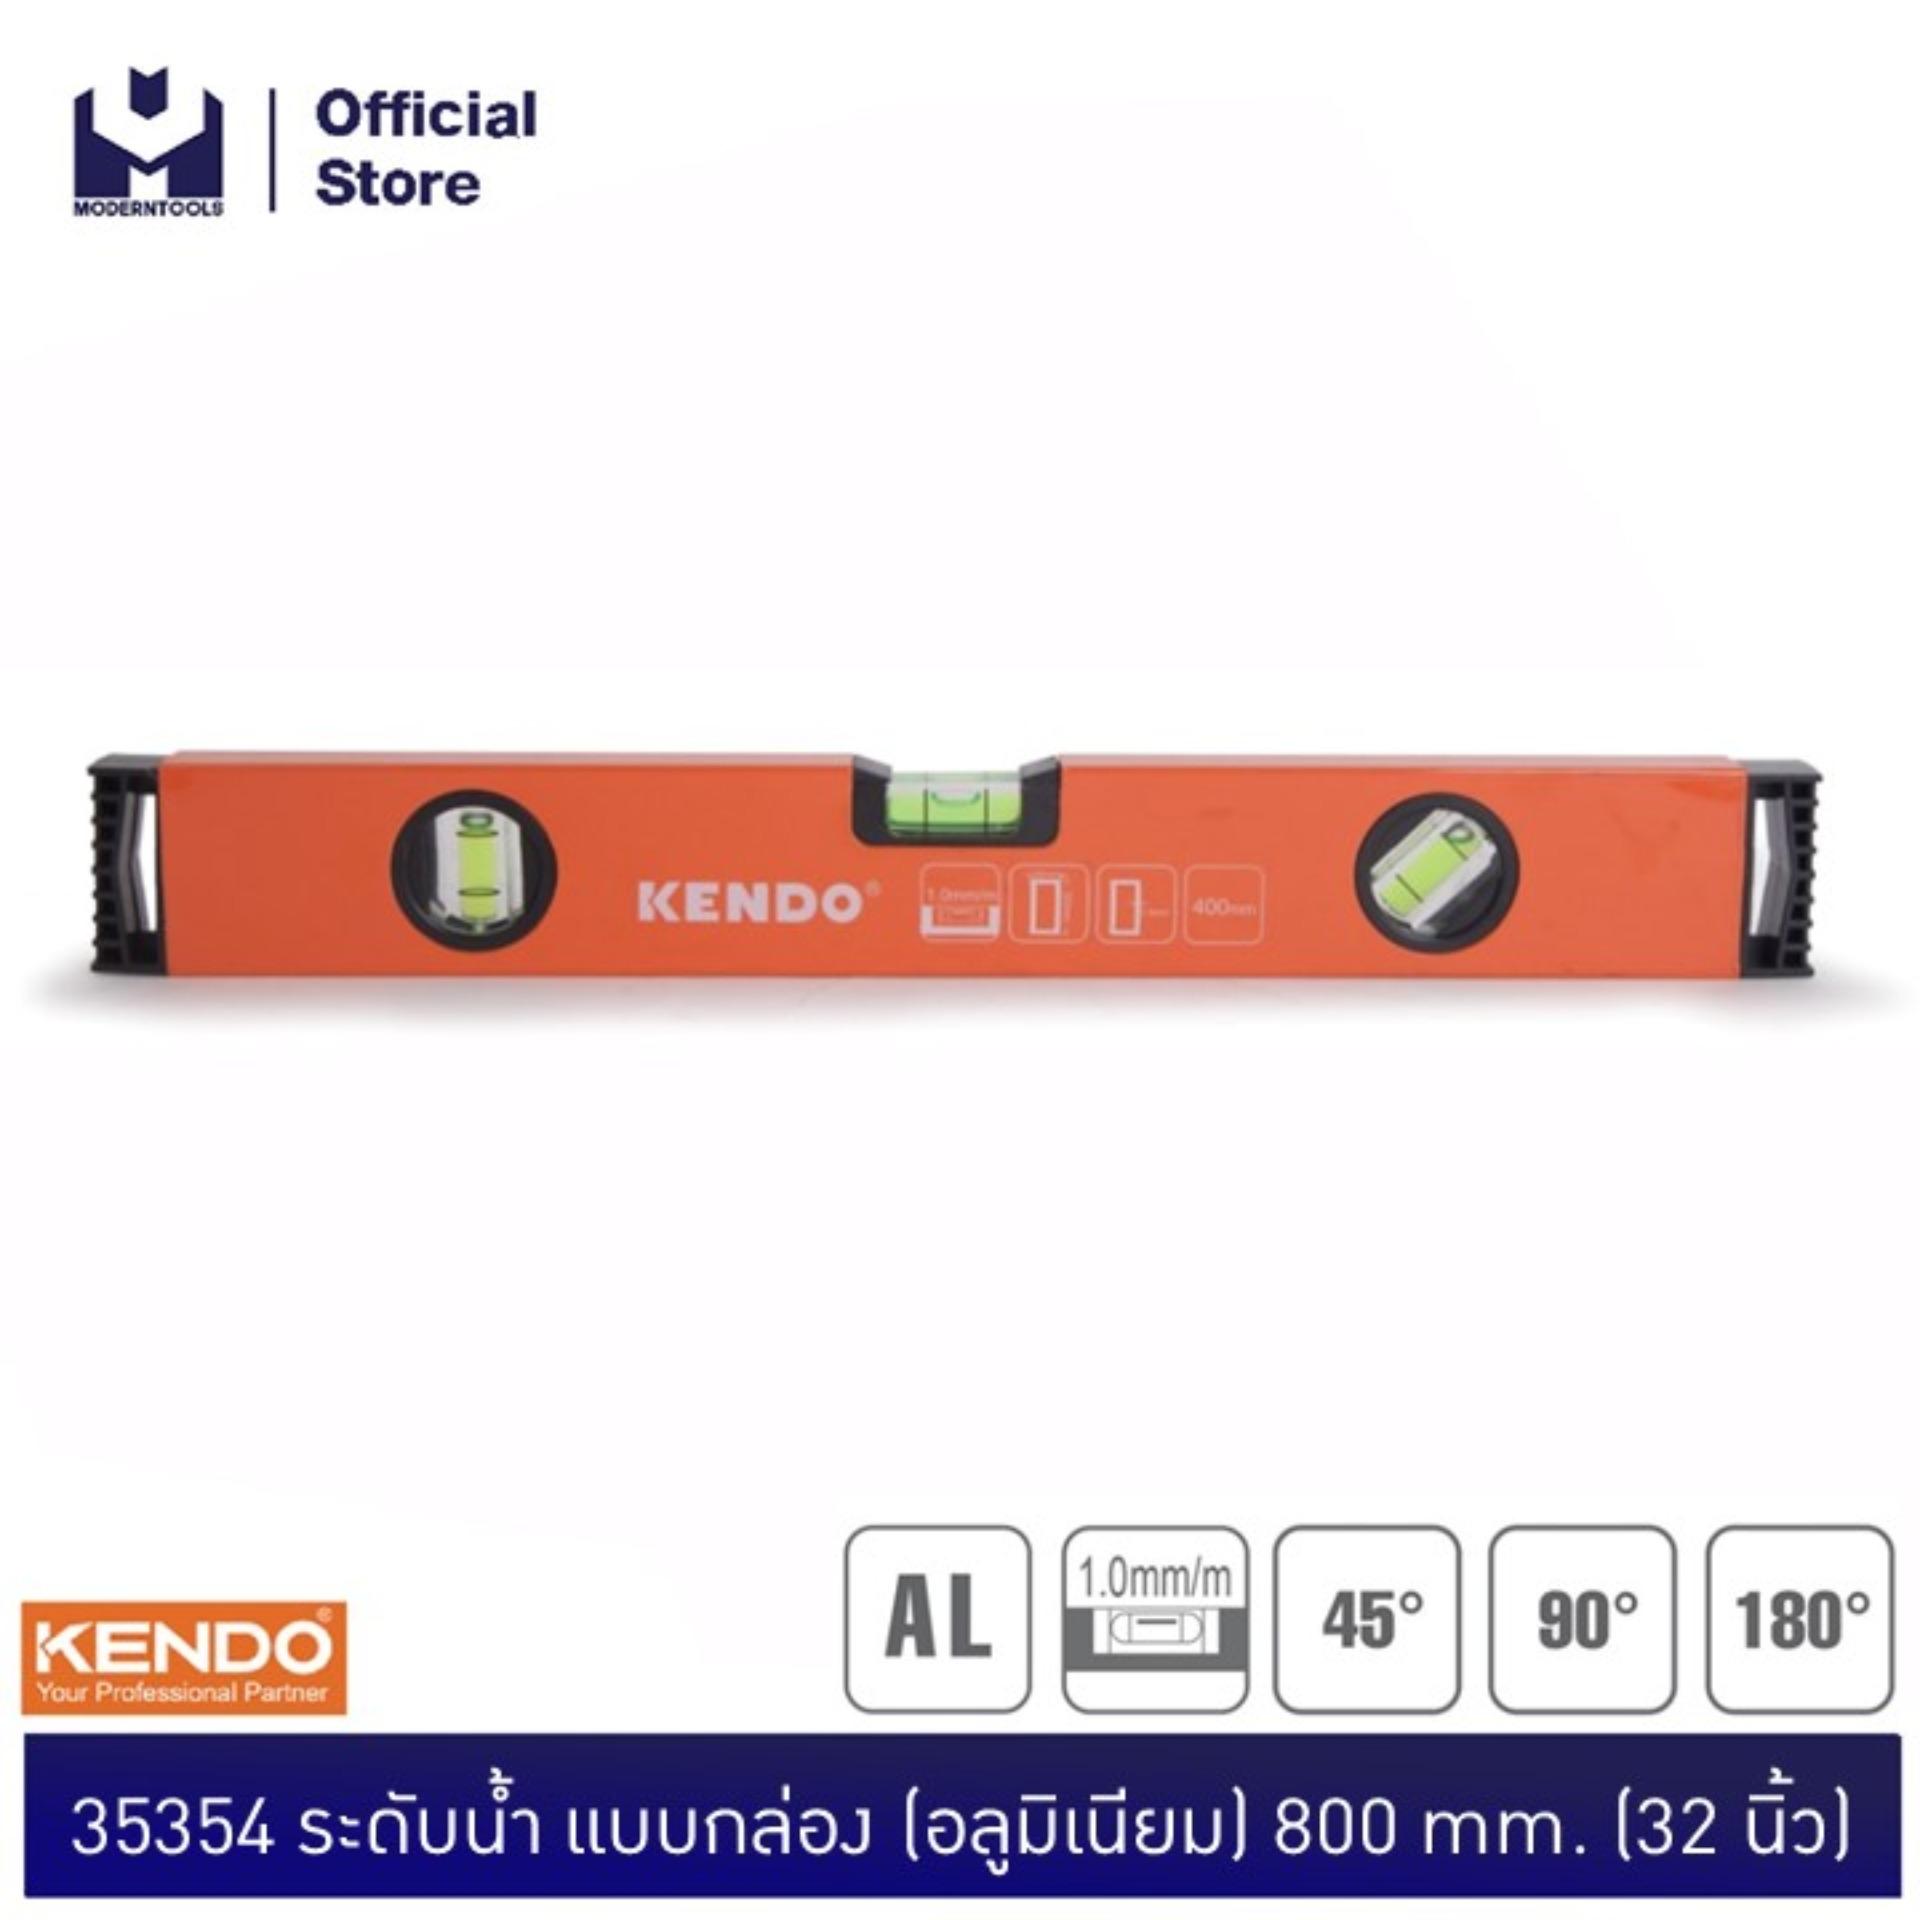 KENDO 35354 ระดับน้ำอลูมิเนียม 800mm. (32 )